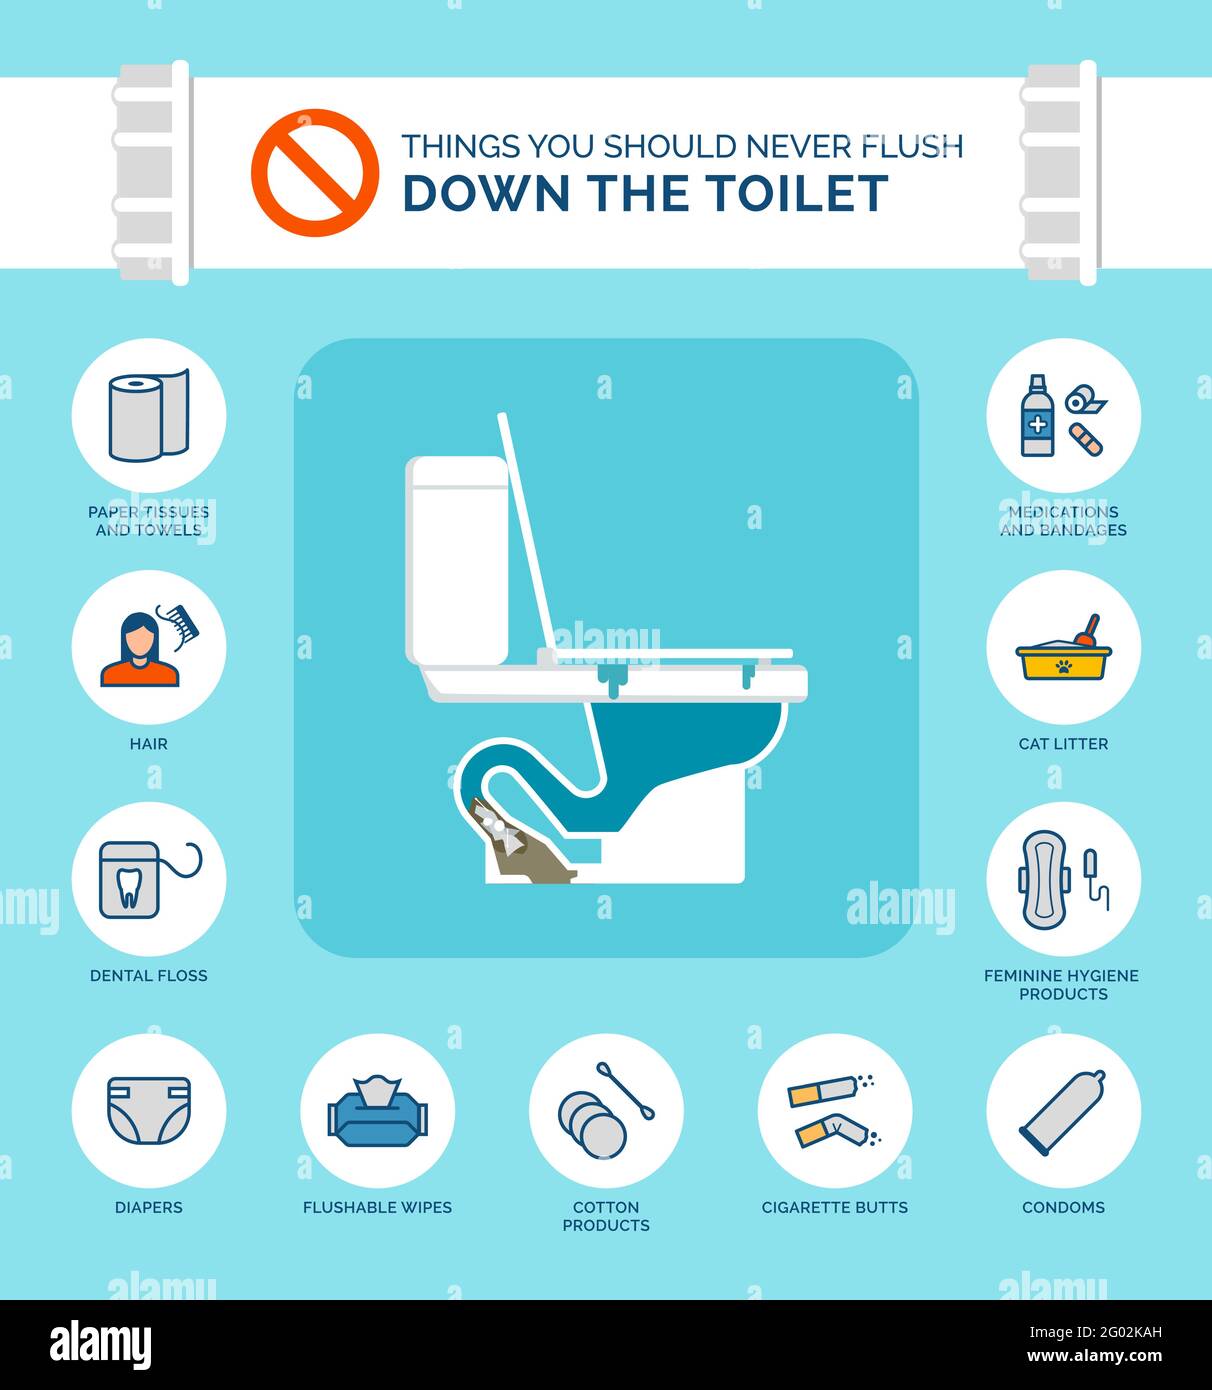 Les choses que vous ne devriez jamais rincer l'infographie sur les toilettes, comment éviter les obstructions dans votre drain Illustration de Vecteur